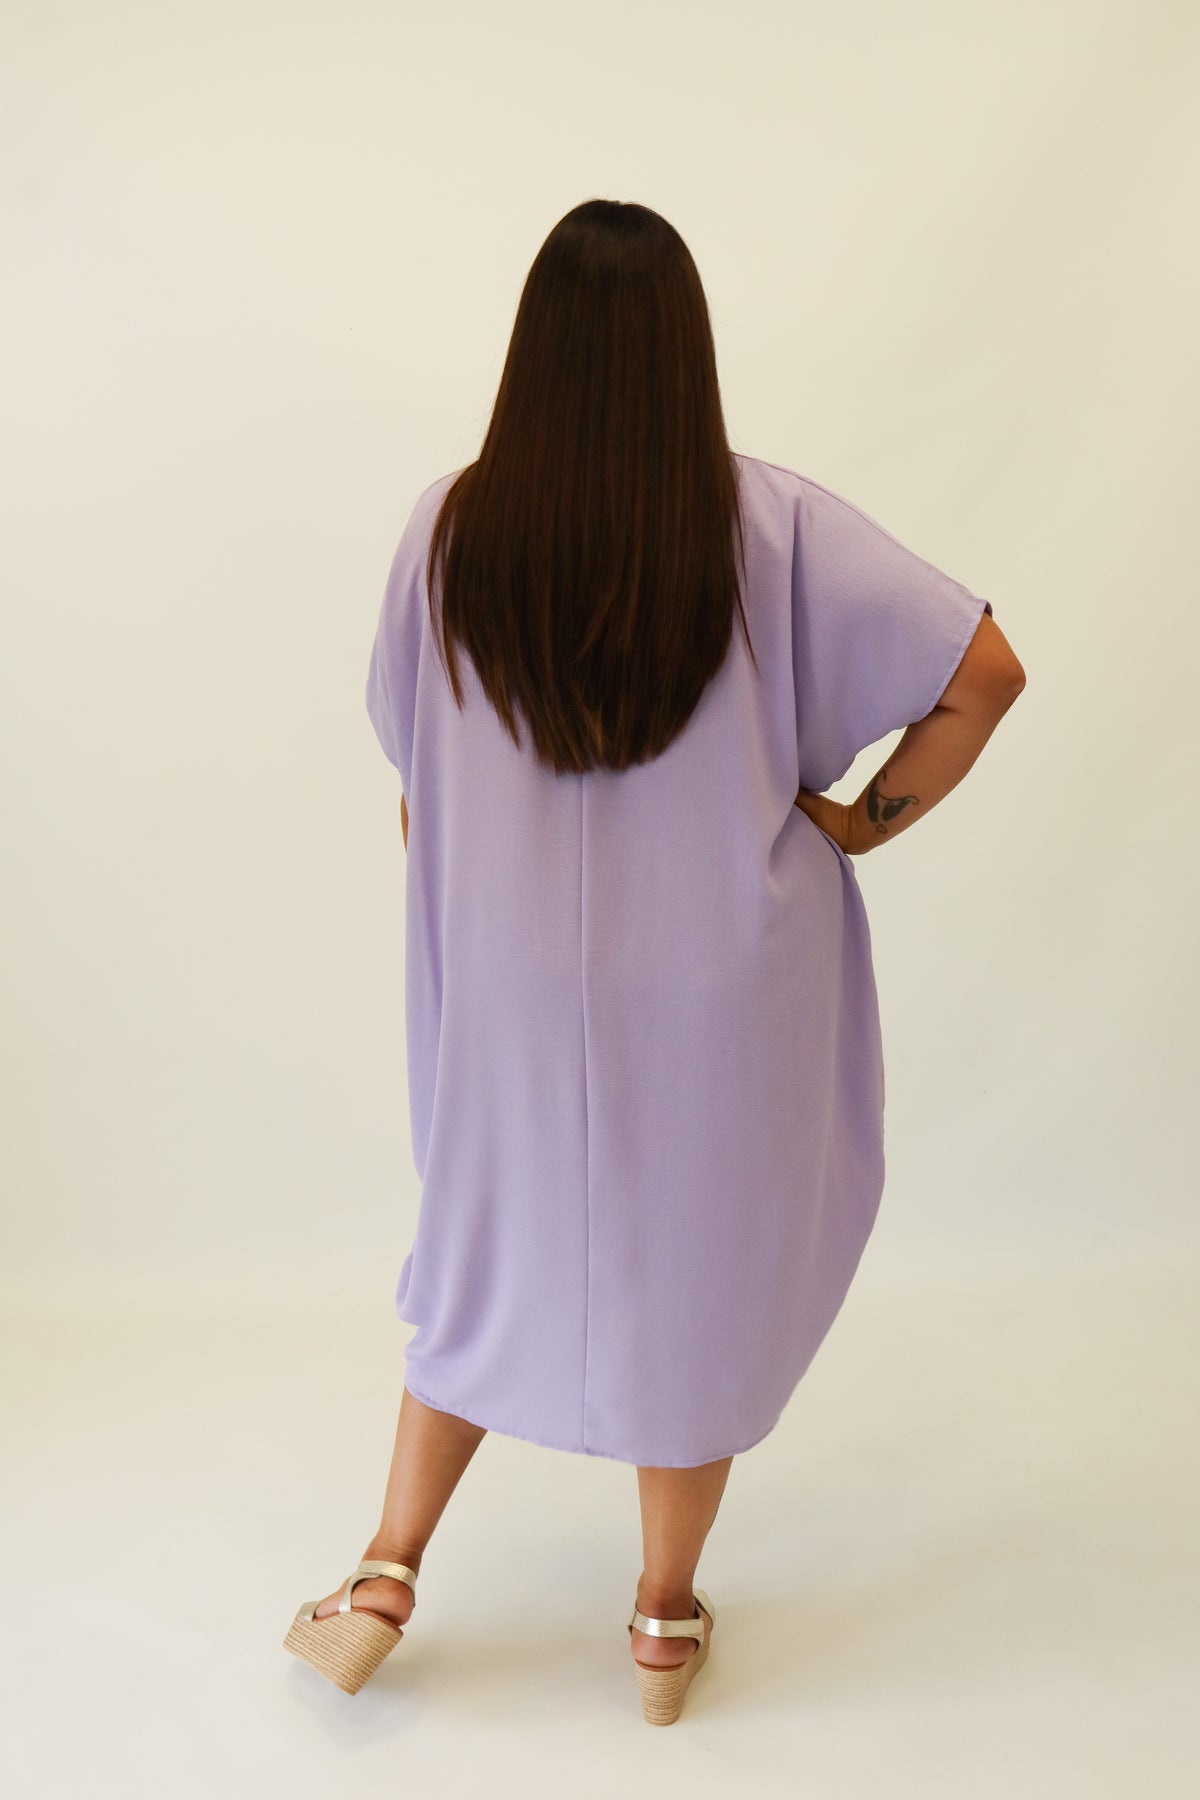 Lexi Dress in Purple